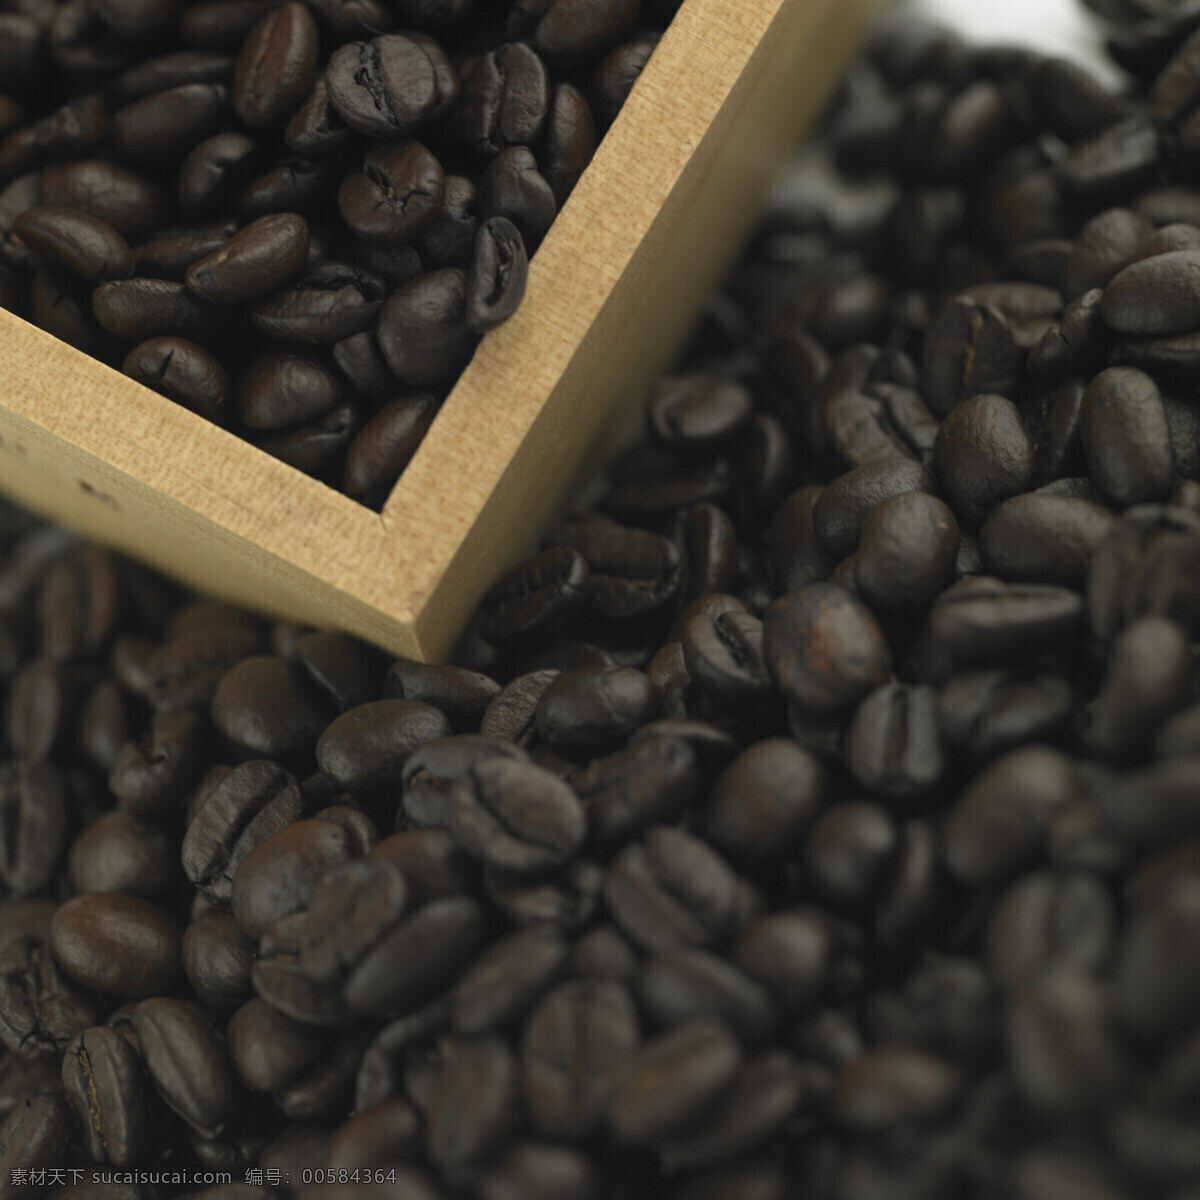 咖啡豆 特写 咖啡 咖啡原料 摄影图 高清图片 咖啡图片 餐饮美食